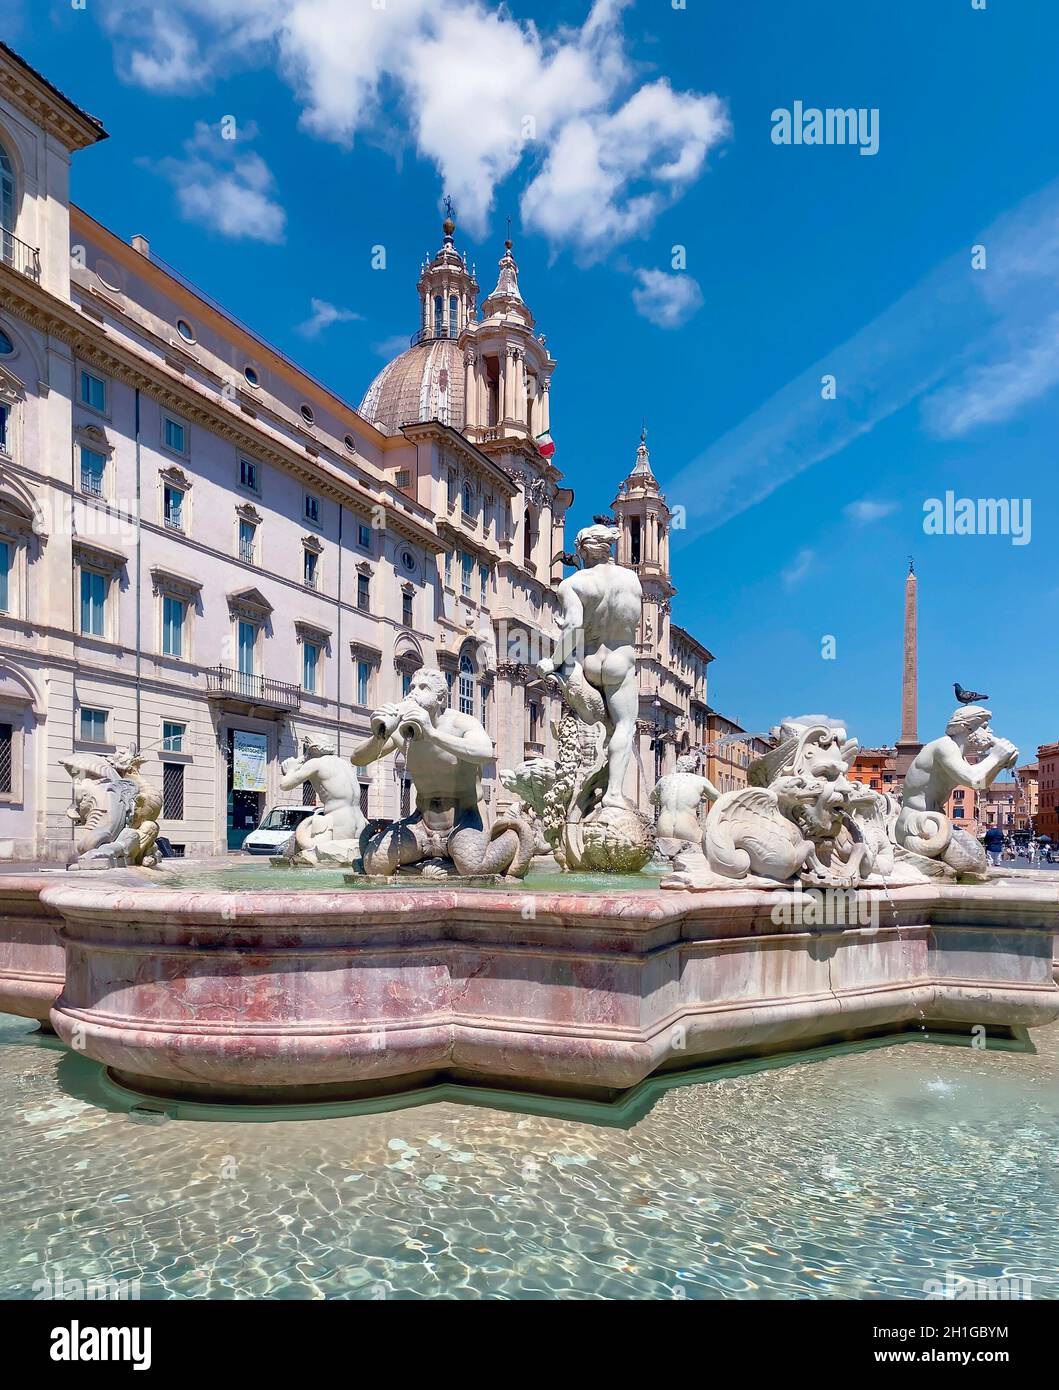 Piazza Navona à Rome par une journée ensoleillée.Architecture baroque et fontaine en marbre avec statues.Place de la ville.Rendez-vous dans les capitales européennes Banque D'Images